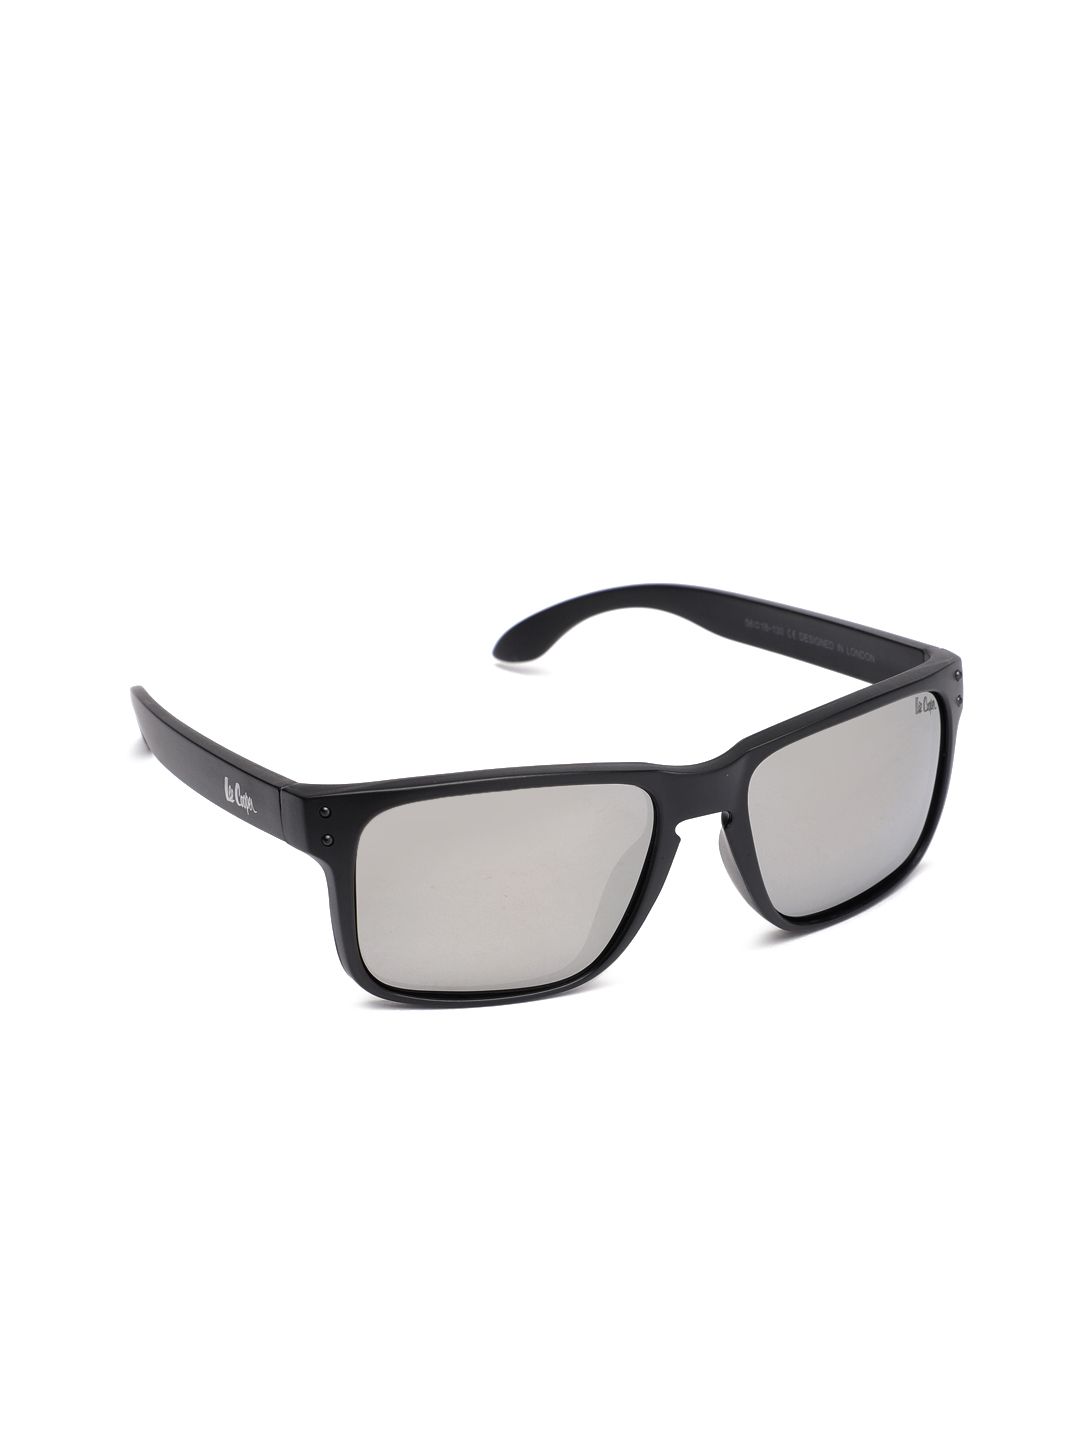 Lee Cooper Unisex Rectangle Sunglasses LC9137 Price in India